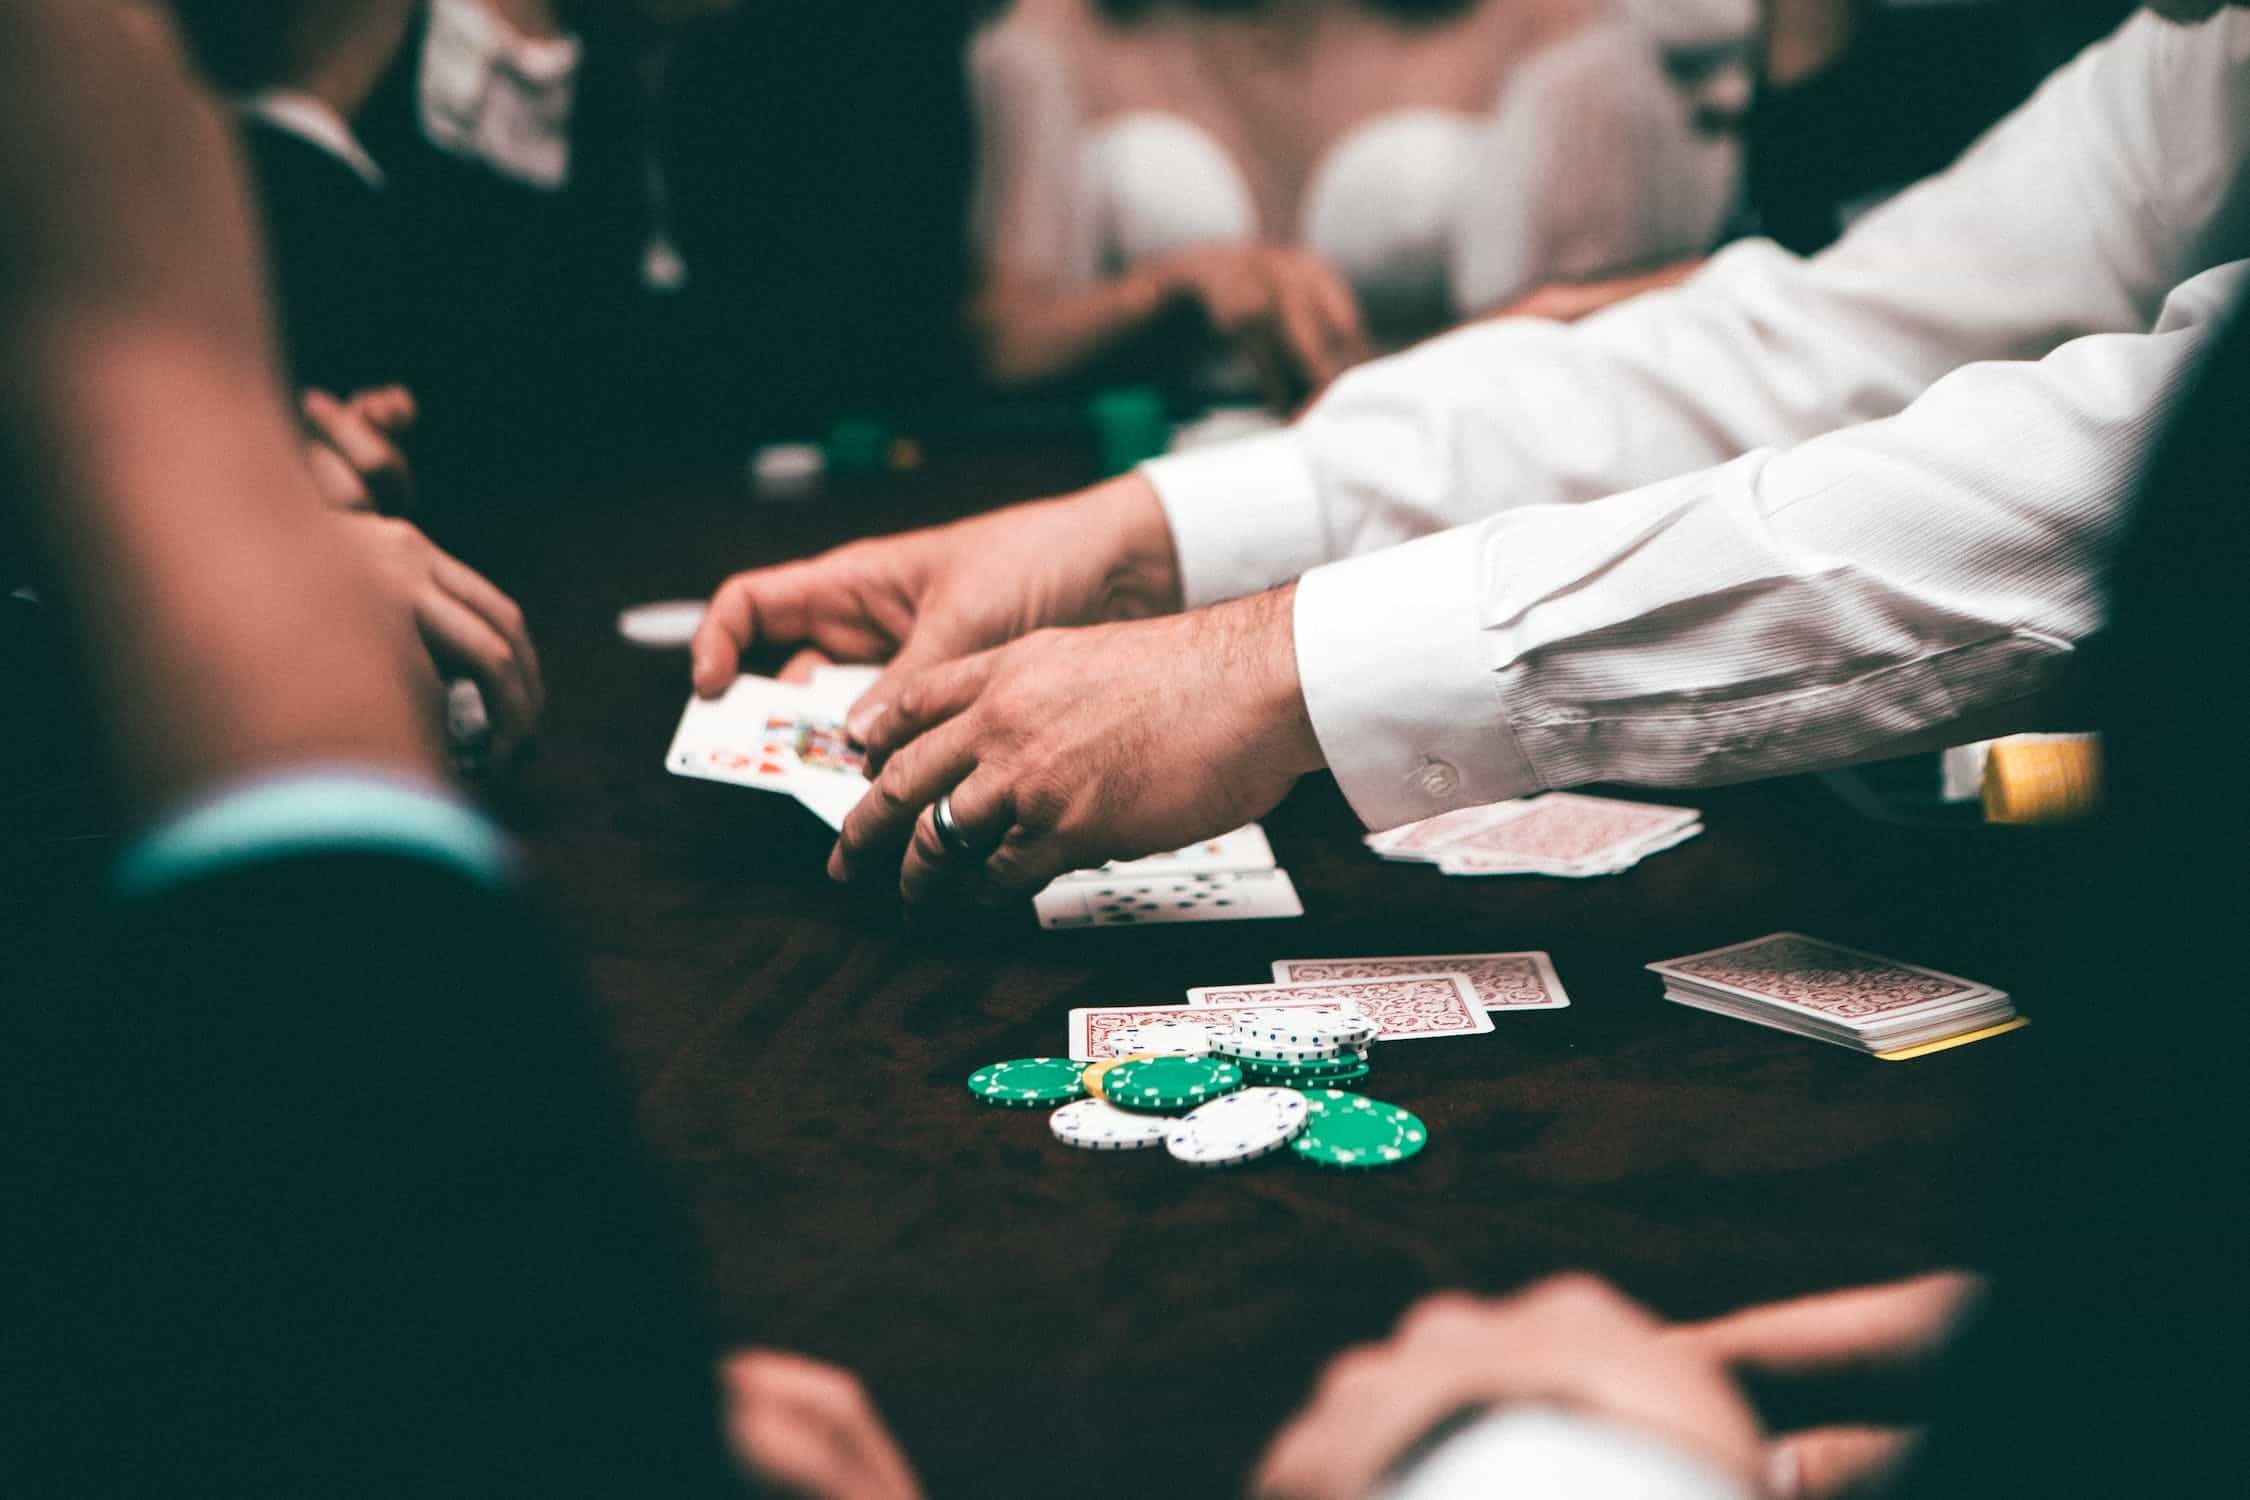 Ein Poker-Dealer hält zwei offene Karten in der Hand. Chips und weitere Karten liegen auf dem Tisch.